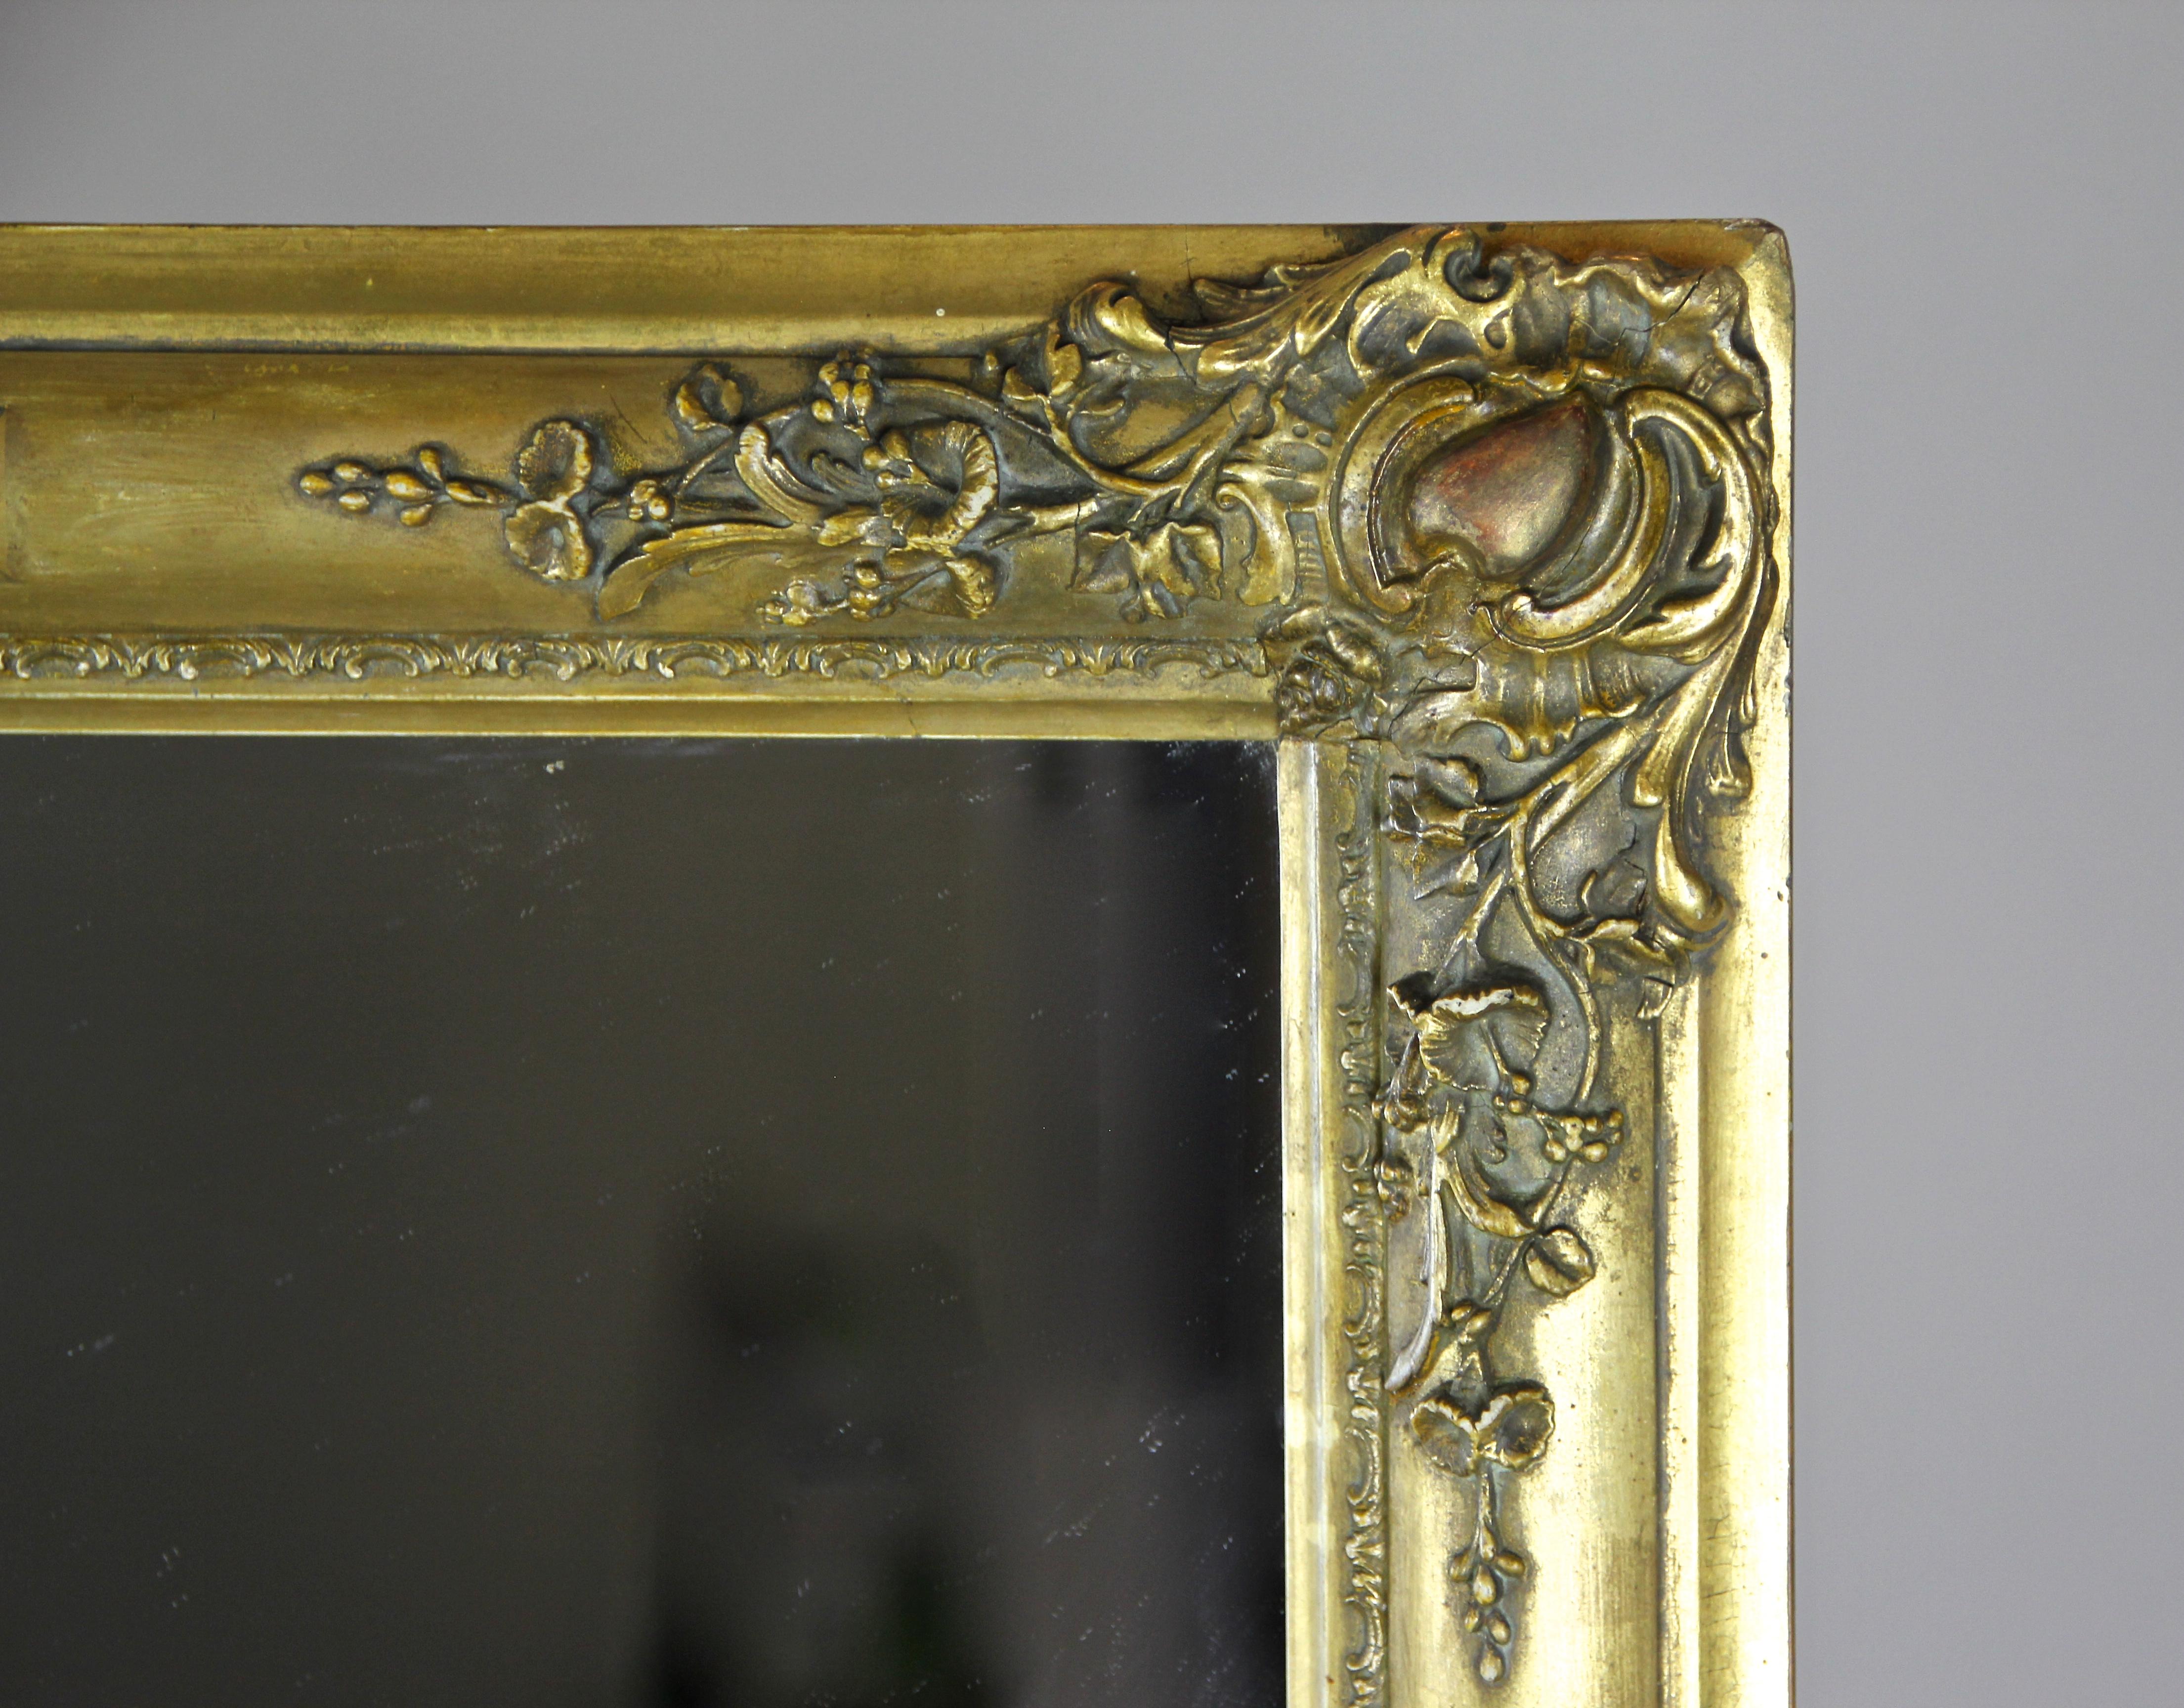 Vergoldeter Biedermeier-Spiegel, Frankreich um 1820 (Zusammensetzung)